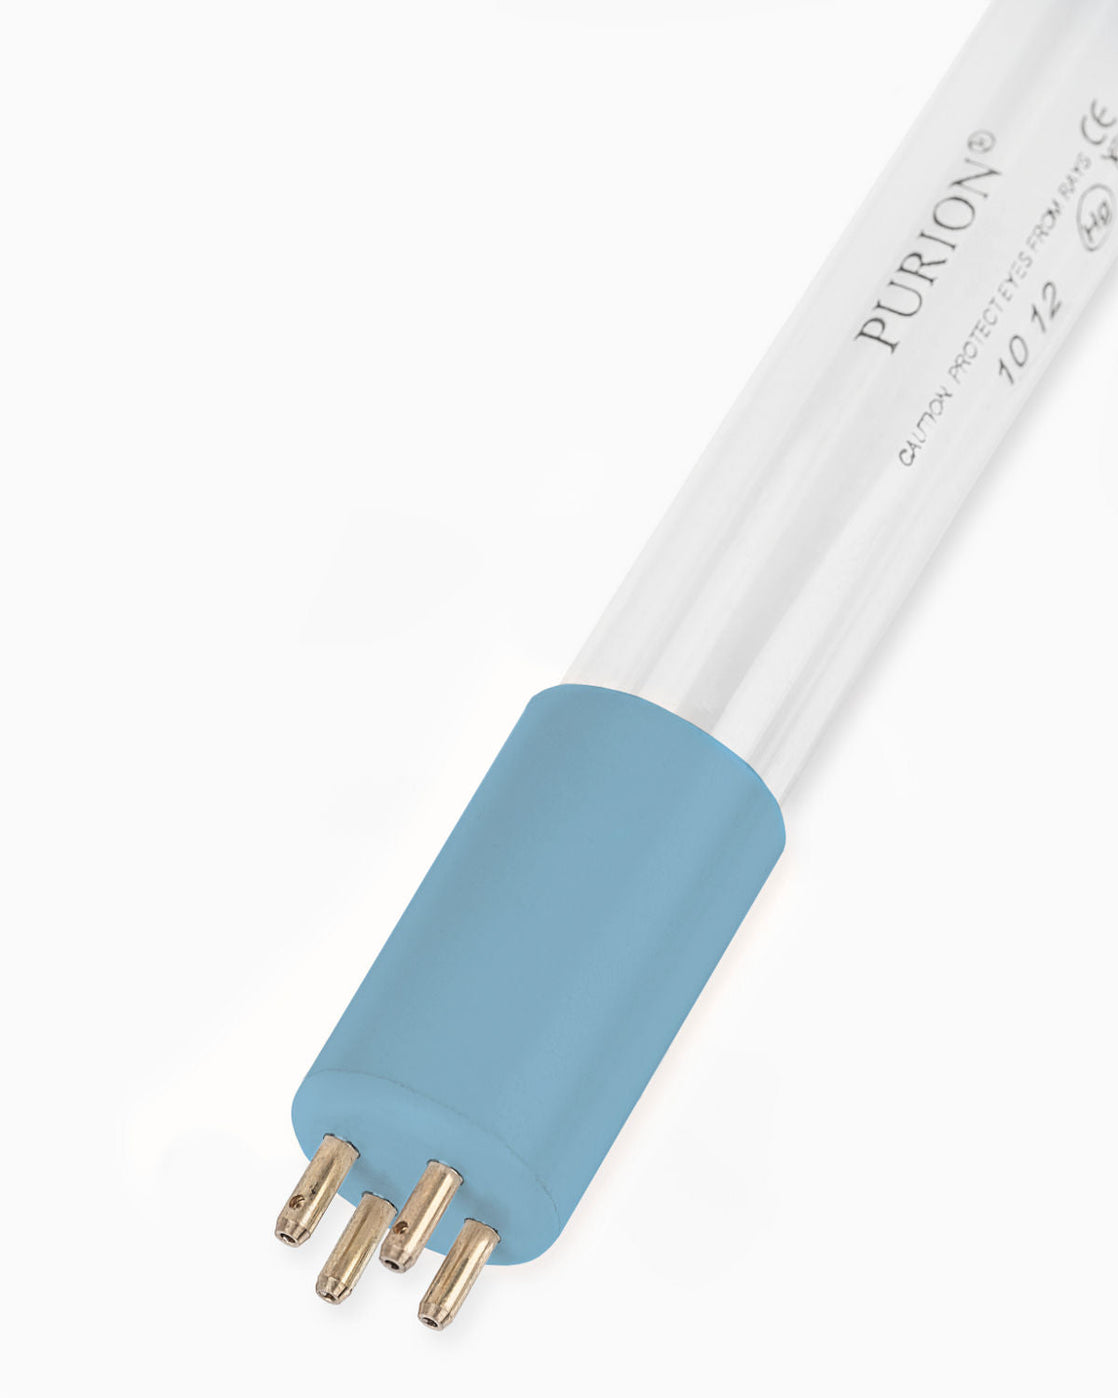 Eine blaue Lichtröhre auf weißem Hintergrund, die zu Desinfektionszwecken verwendet wird. Laut Herstellerangaben sollte das UV-C-Licht im PURION 1000 PRO OTC Plus der PURION GmbH danach ausgetauscht werden.